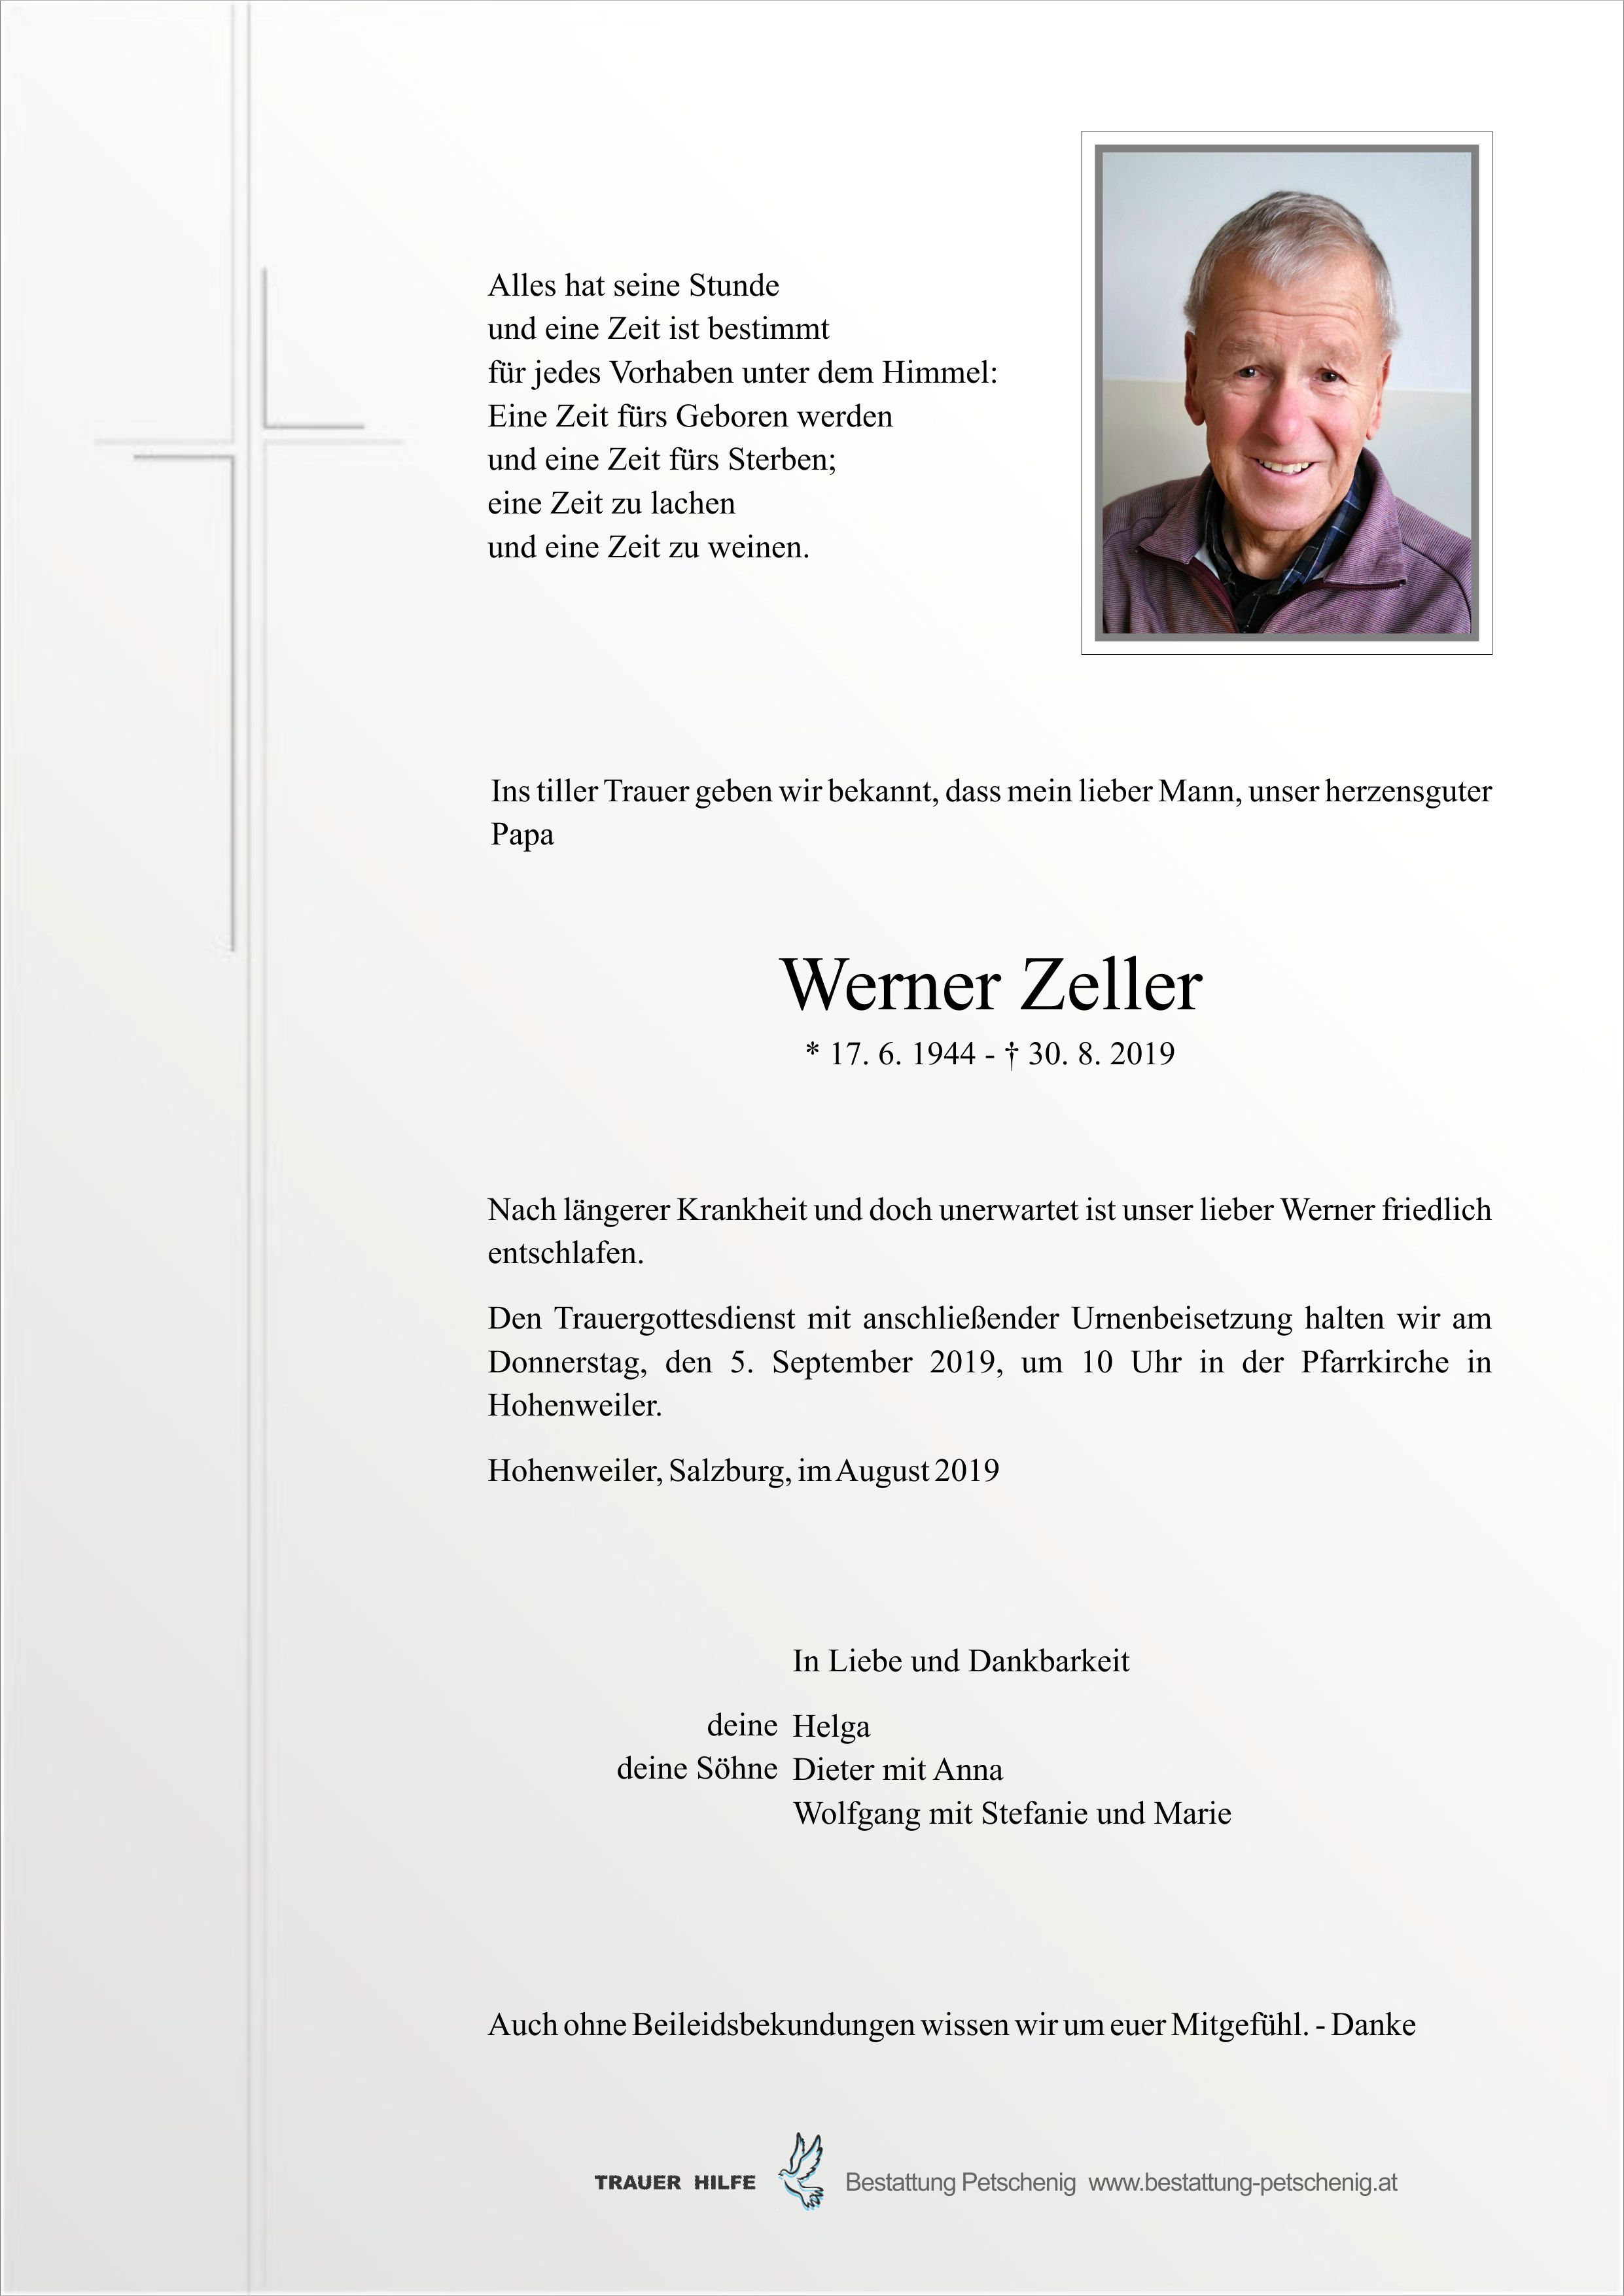 Werner Zeller